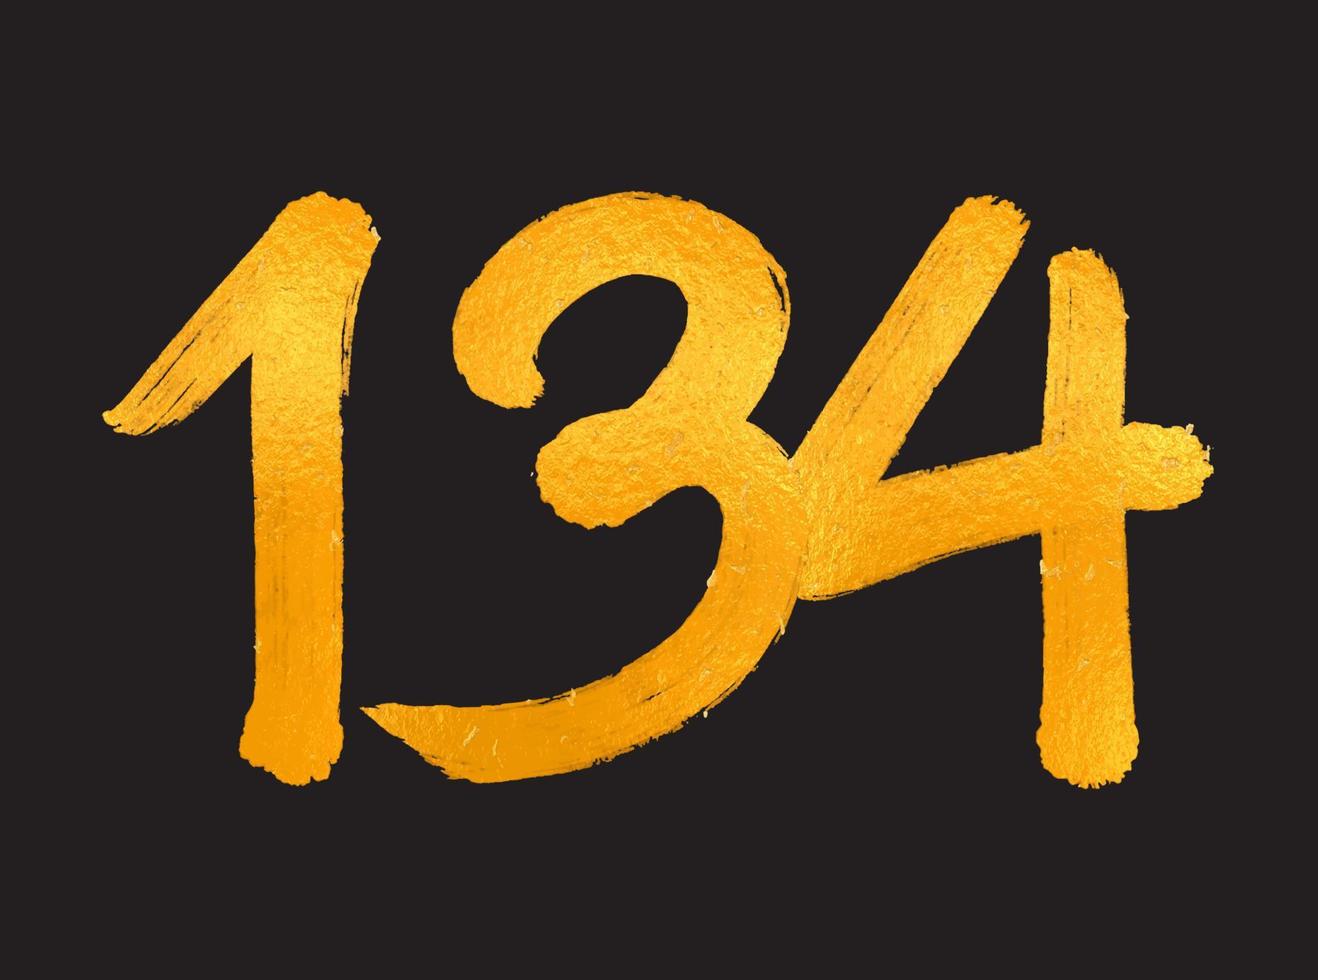 134-Nummer-Logo-Vektorillustration, 134-jähriges Jubiläumsfeier-Vektorvorlage, 134. Geburtstag, Goldbeschriftung Zahlen Pinselzeichnung handgezeichnete Skizze, Nummer-Logo-Design für Druck, T-Shirt vektor